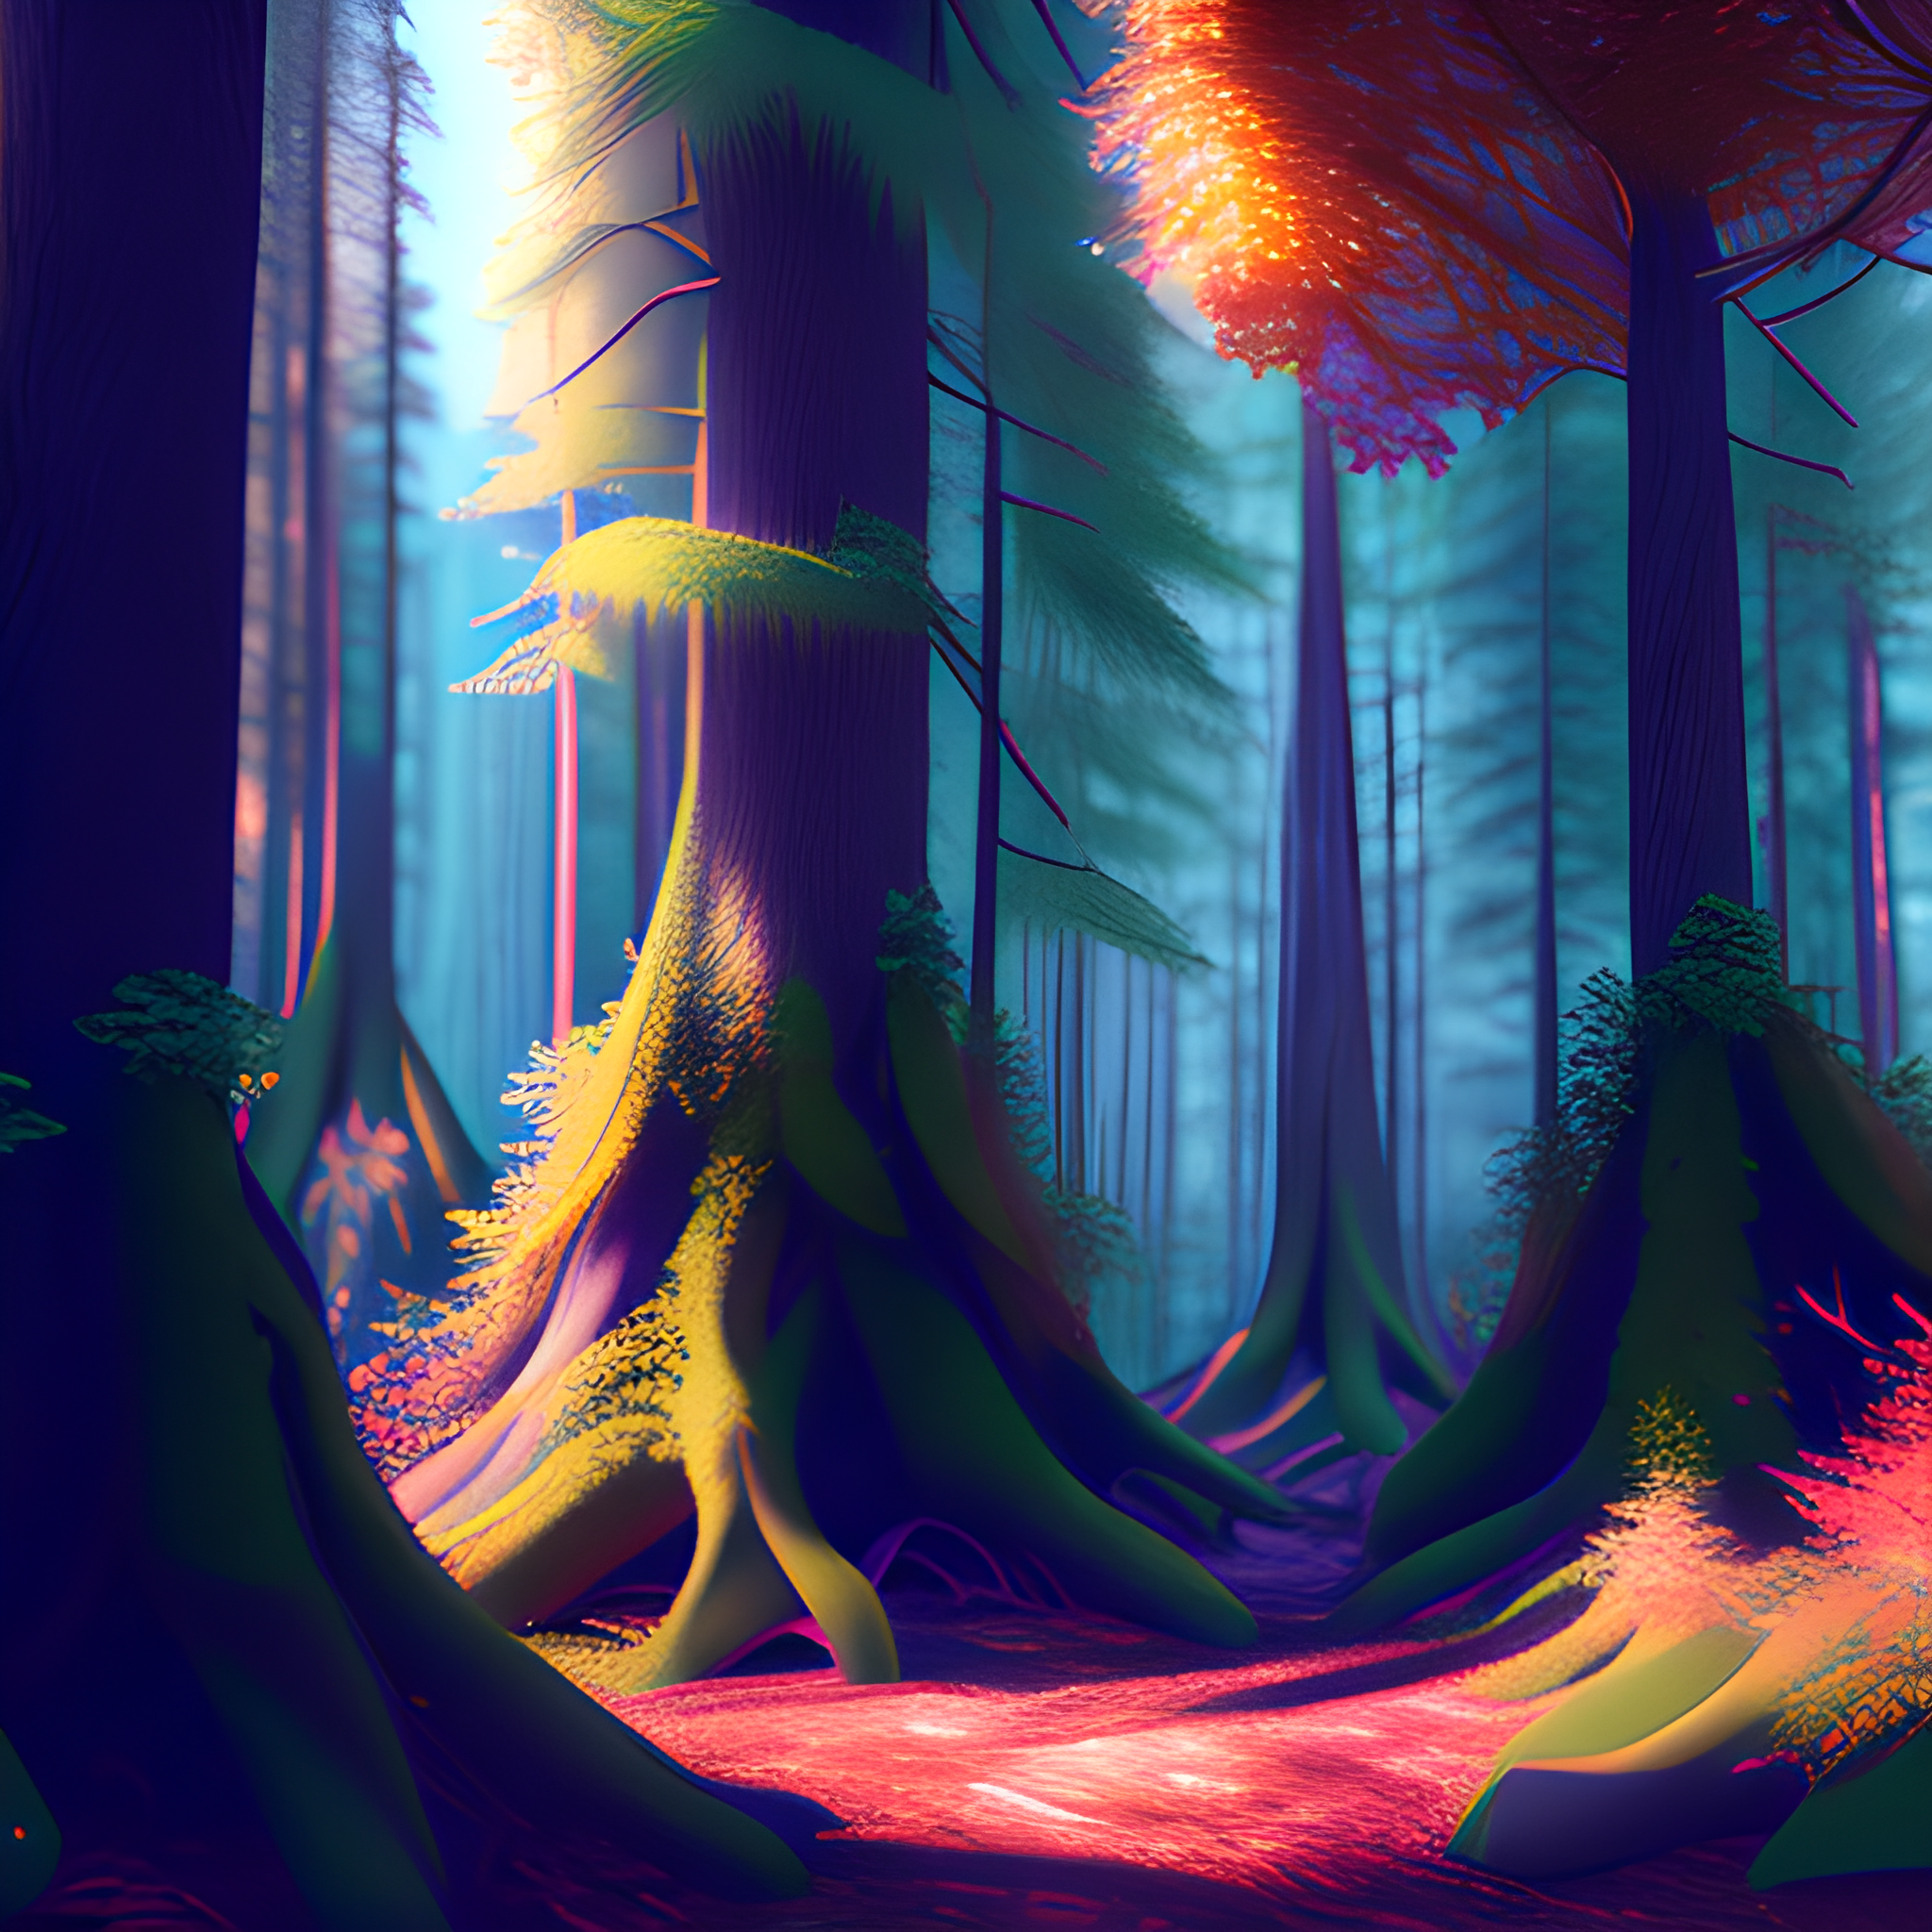 Forest Adventure Fantasy Landscape Concept Art